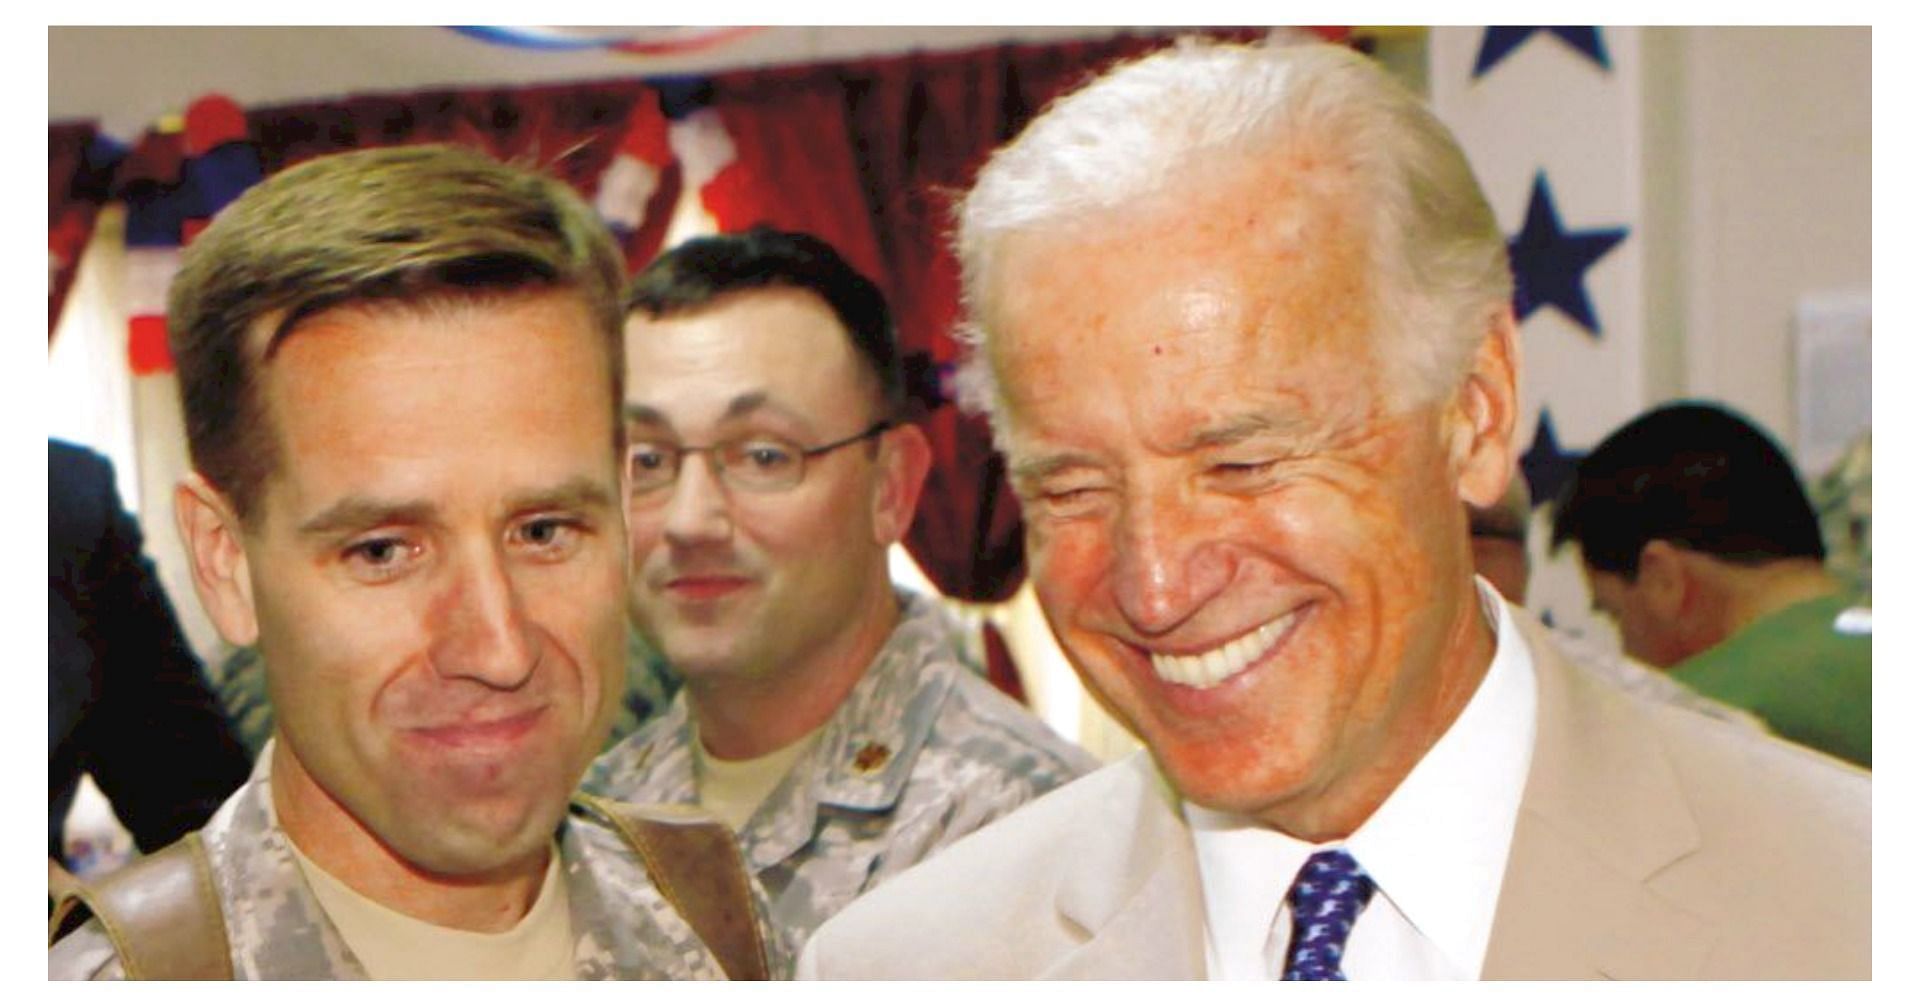 Did Joe Biden&rsquo;s son Beau die in Iraq? Here